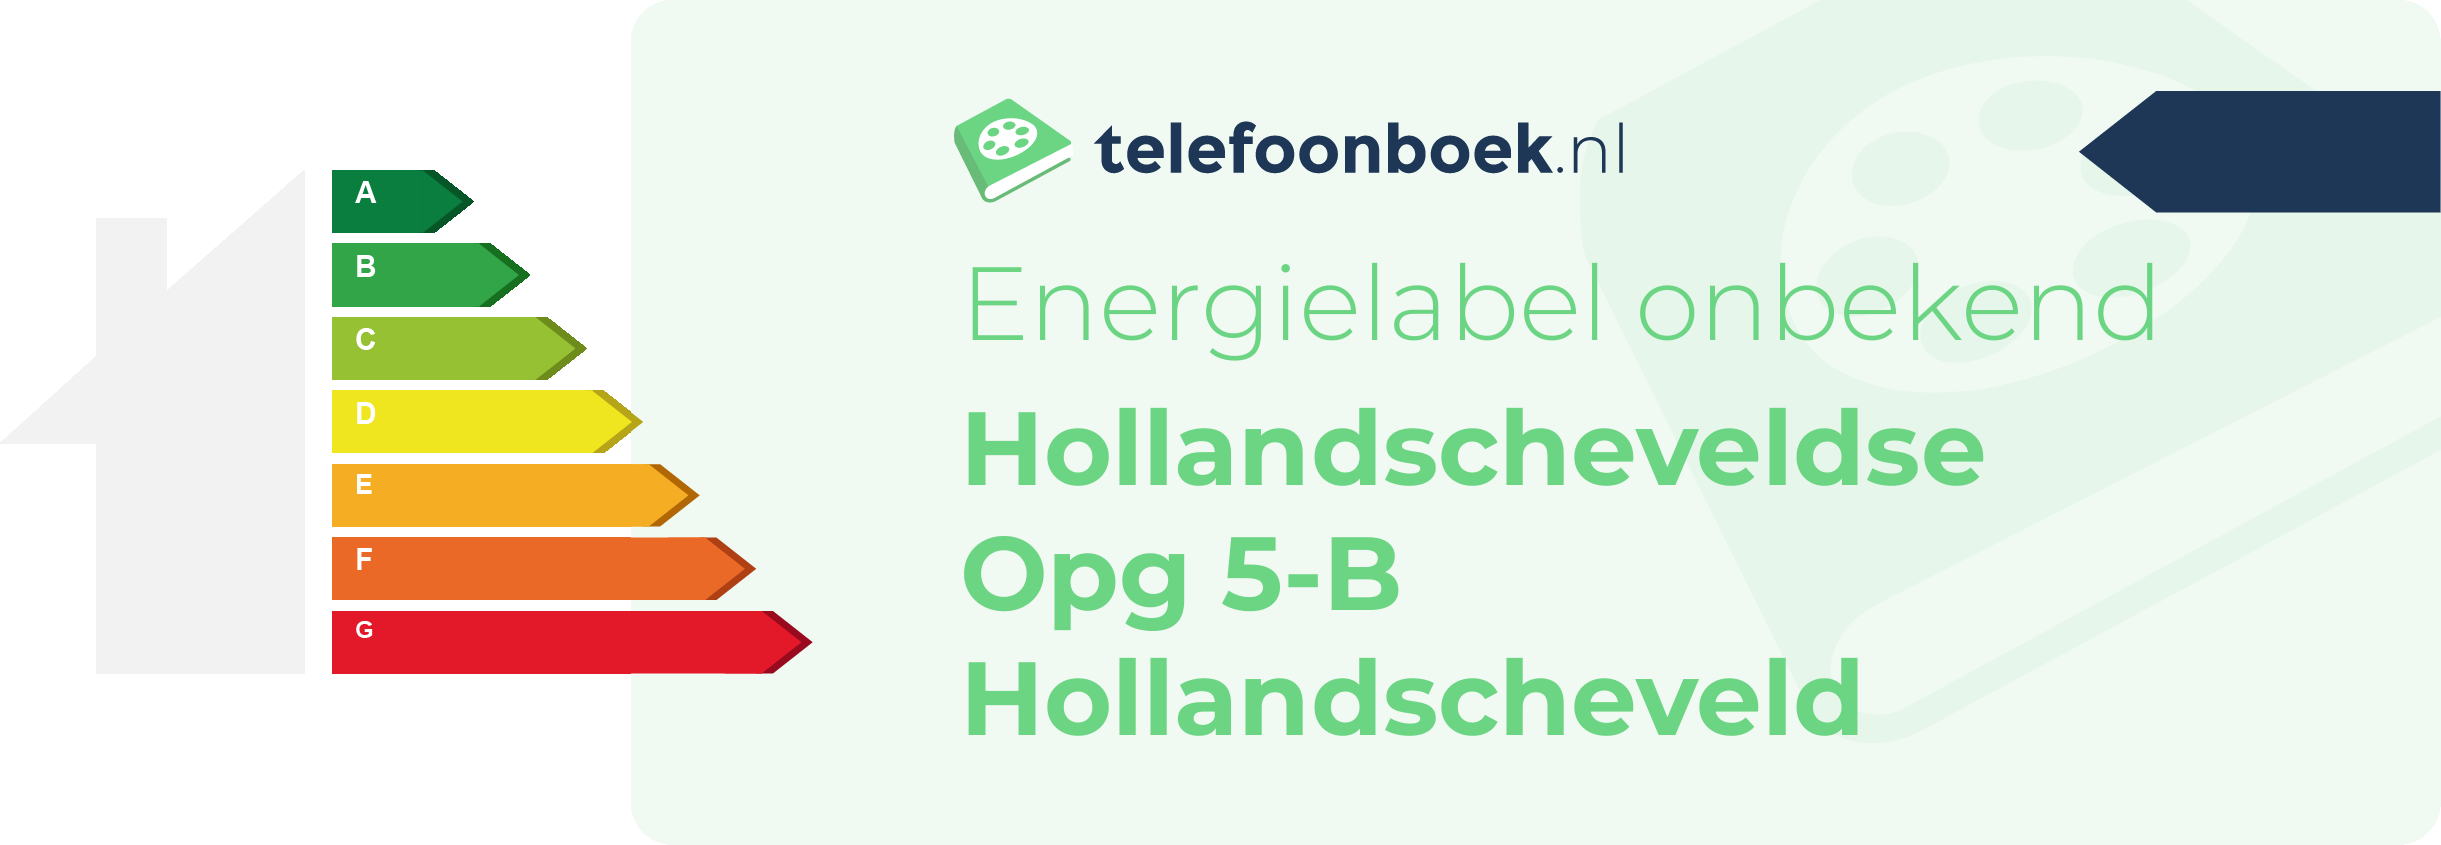 Energielabel Hollandscheveldse Opg 5-B Hollandscheveld